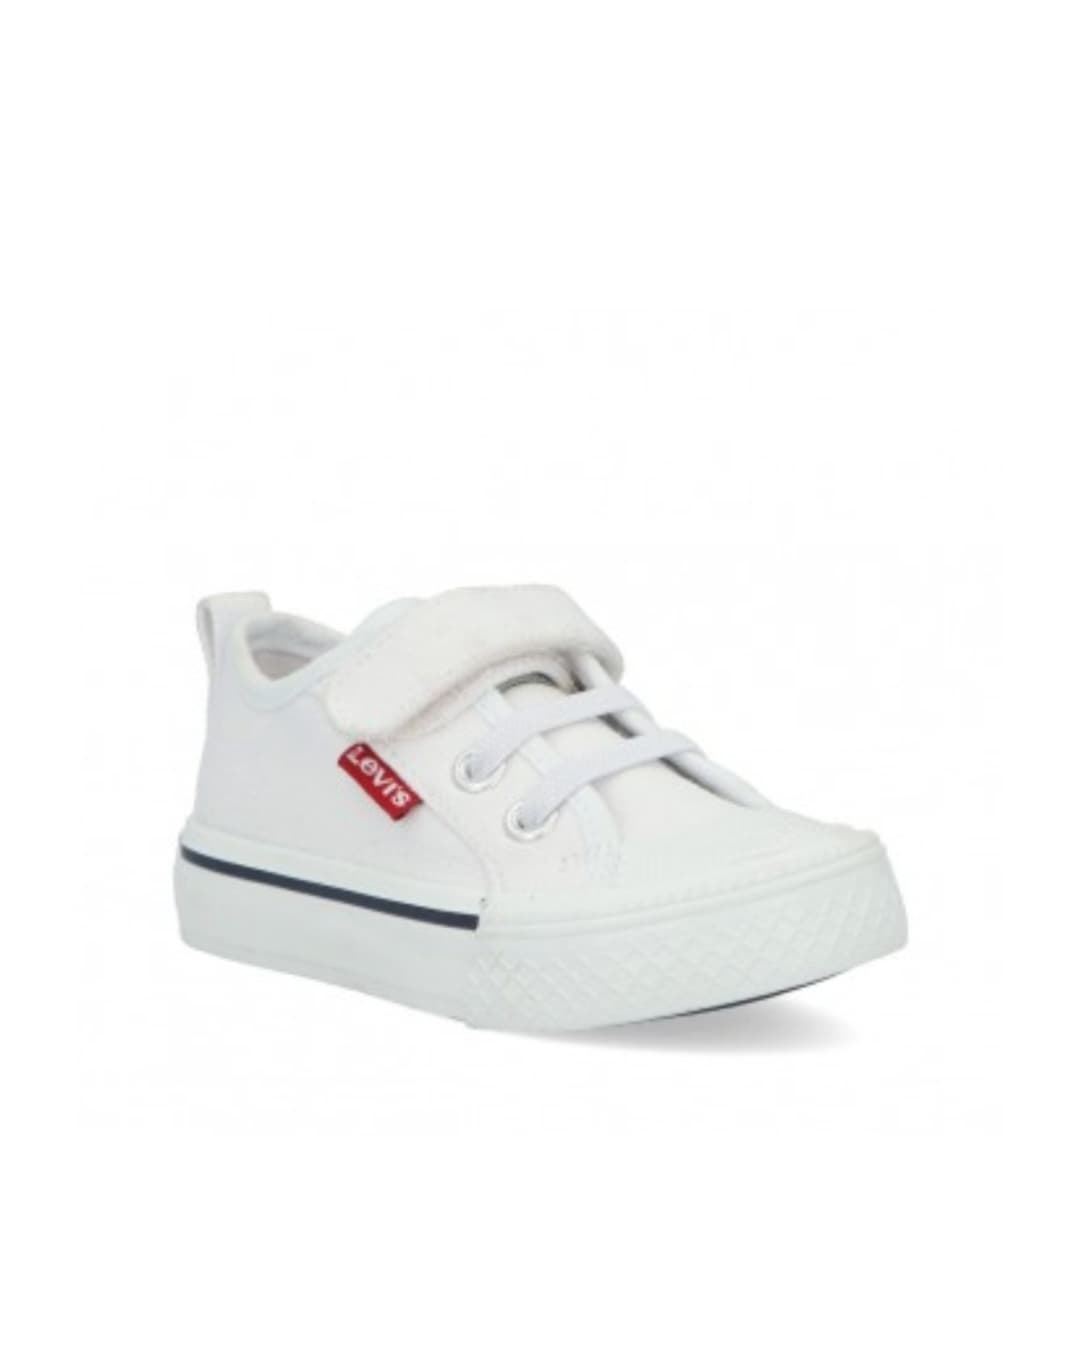 Buy Levi's children's white canvas shoes / 